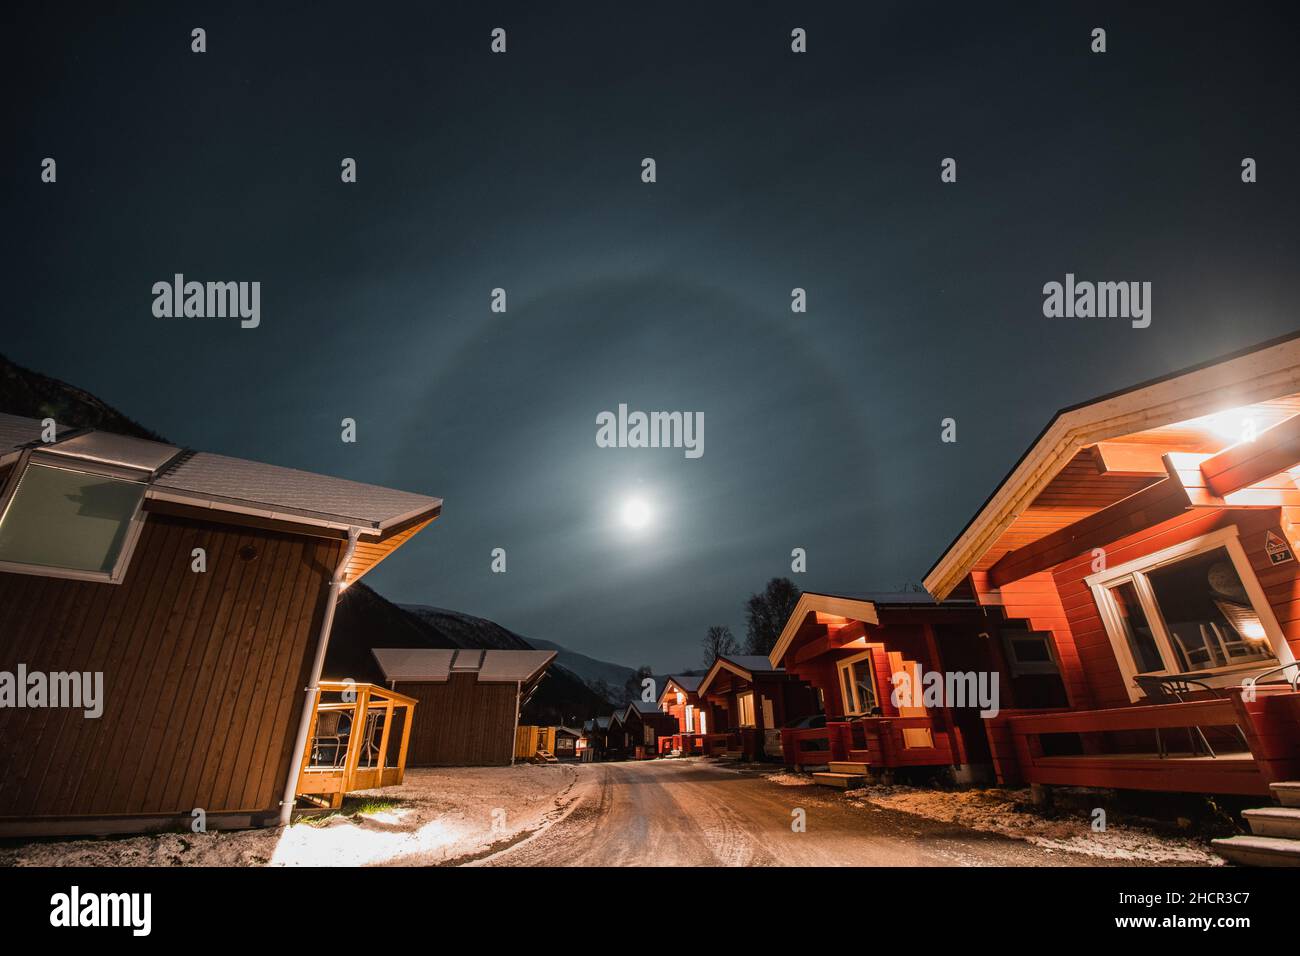 L'effetto alone della luna nella città norvegese settentrionale di Tromso tra le tipiche capanne rosse. Una luna che sospira, lontano dal Circolo polare Artico. Foto Stock